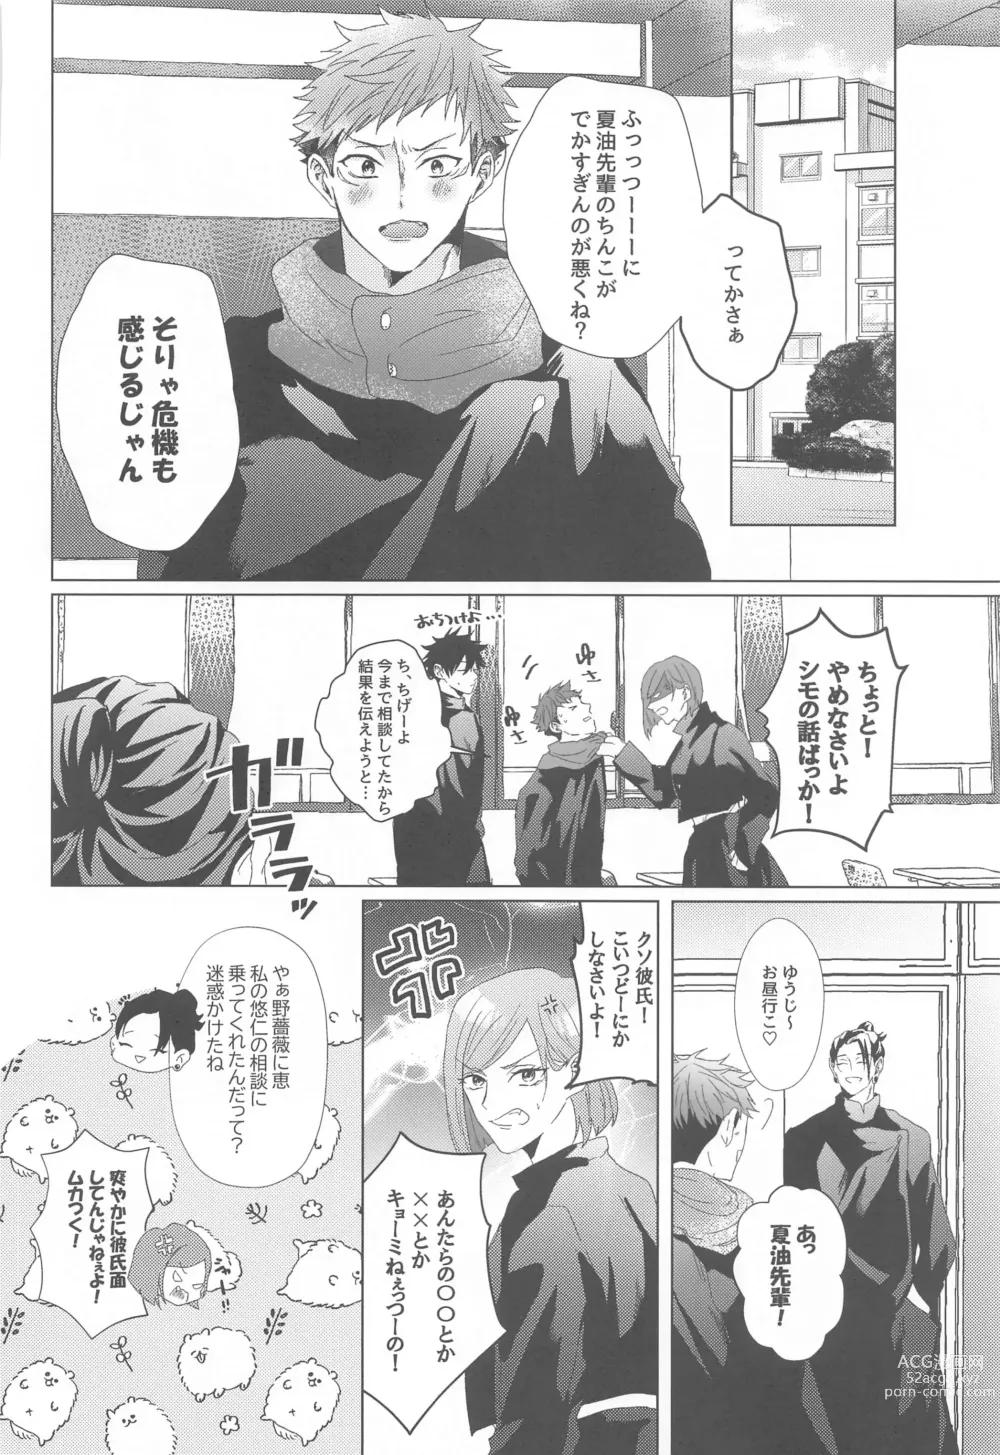 Page 49 of doujinshi Senpai, Anone.